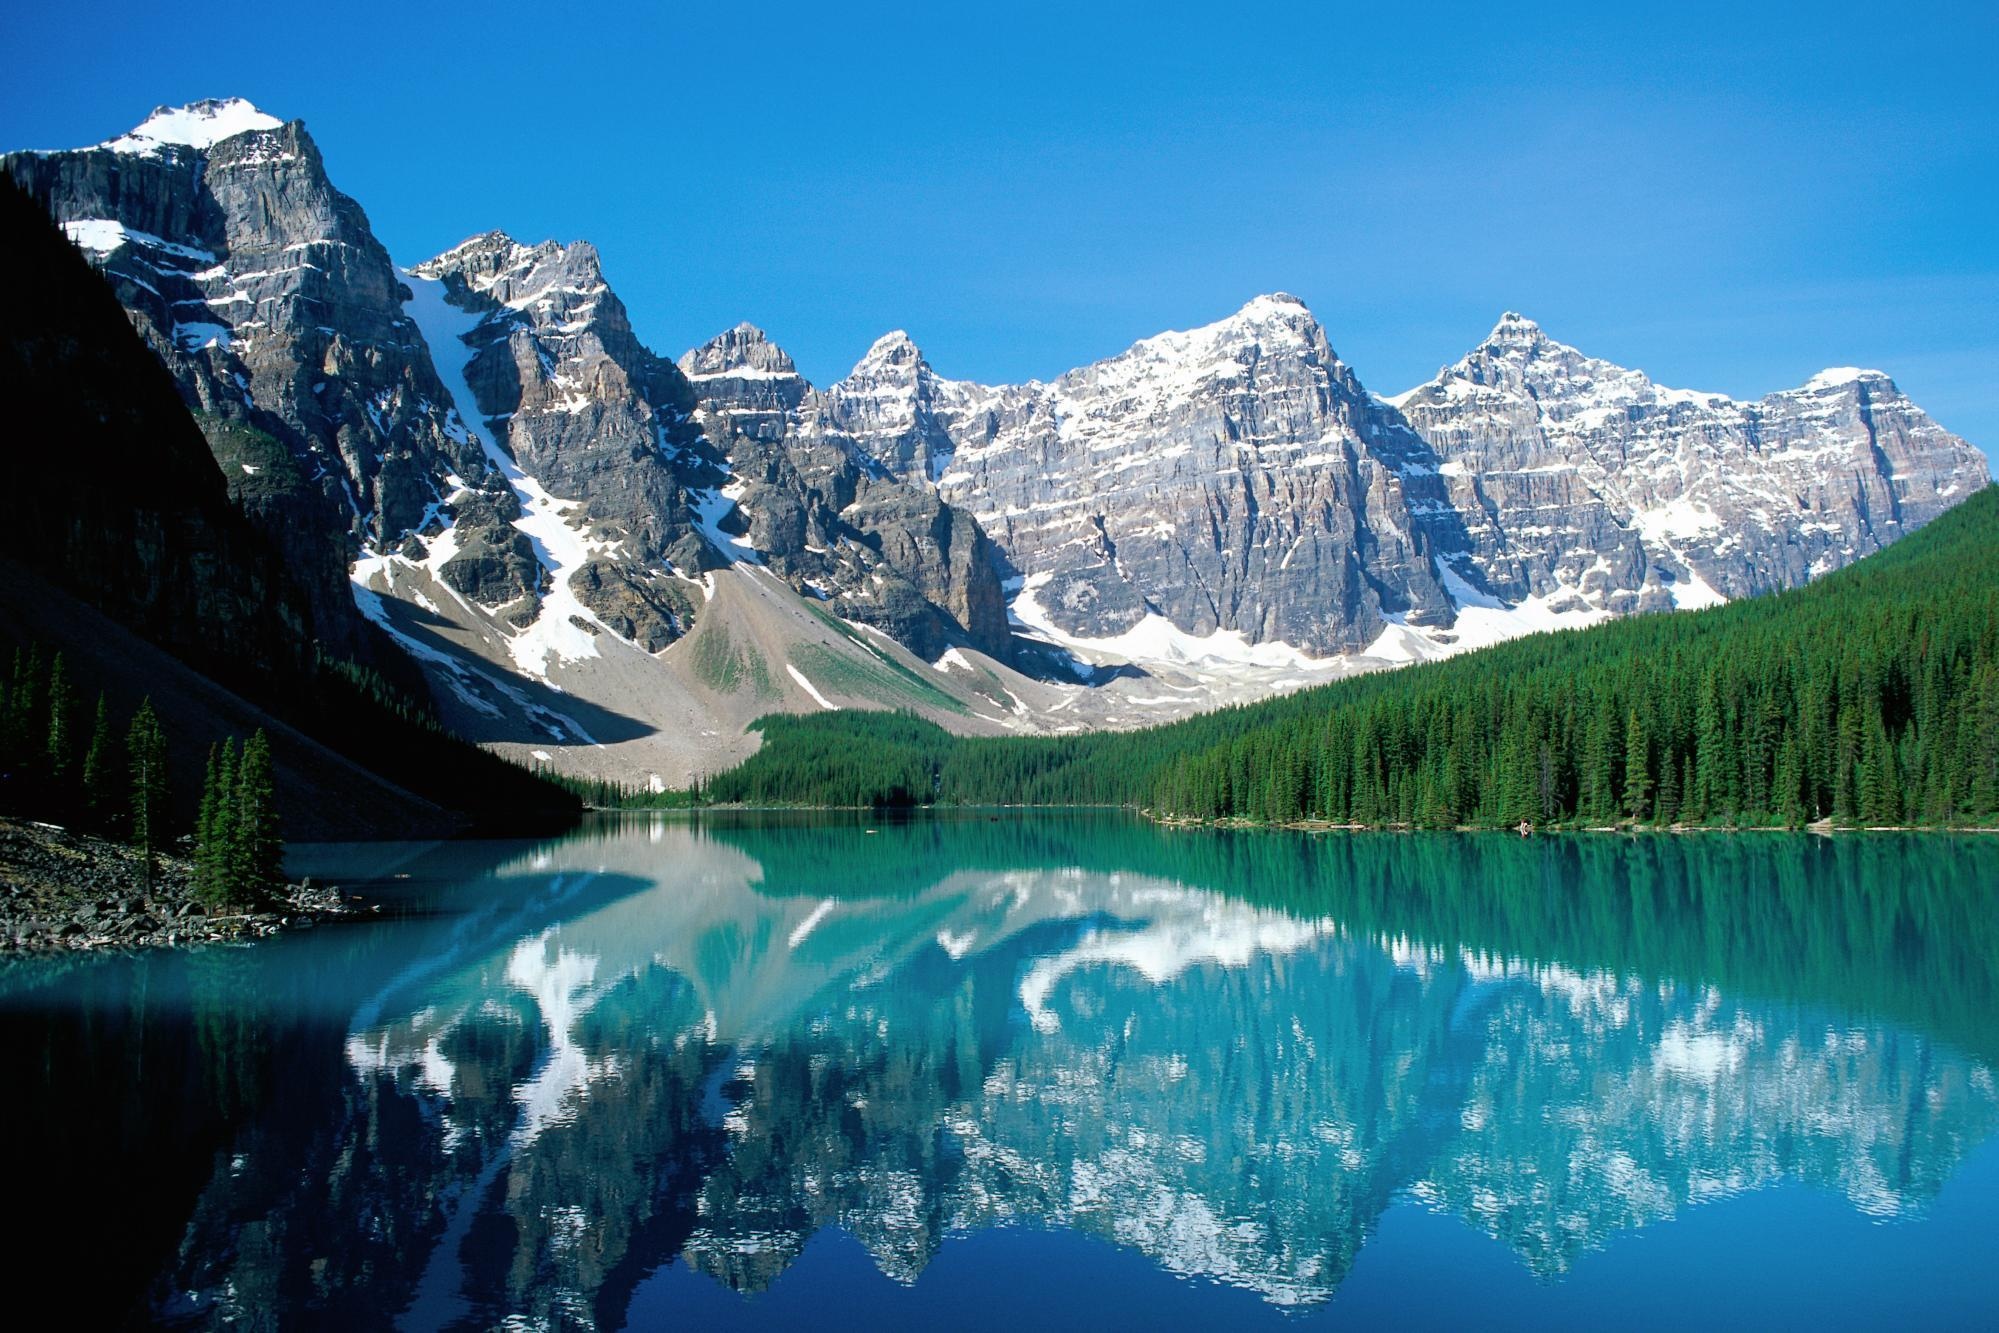 Big jpg image. Озеро Морейн в Канаде. Озеро Банф Канада. Озеро Морейн. Национальный парк Банф. Ледниковое озеро Морейн, Канада.